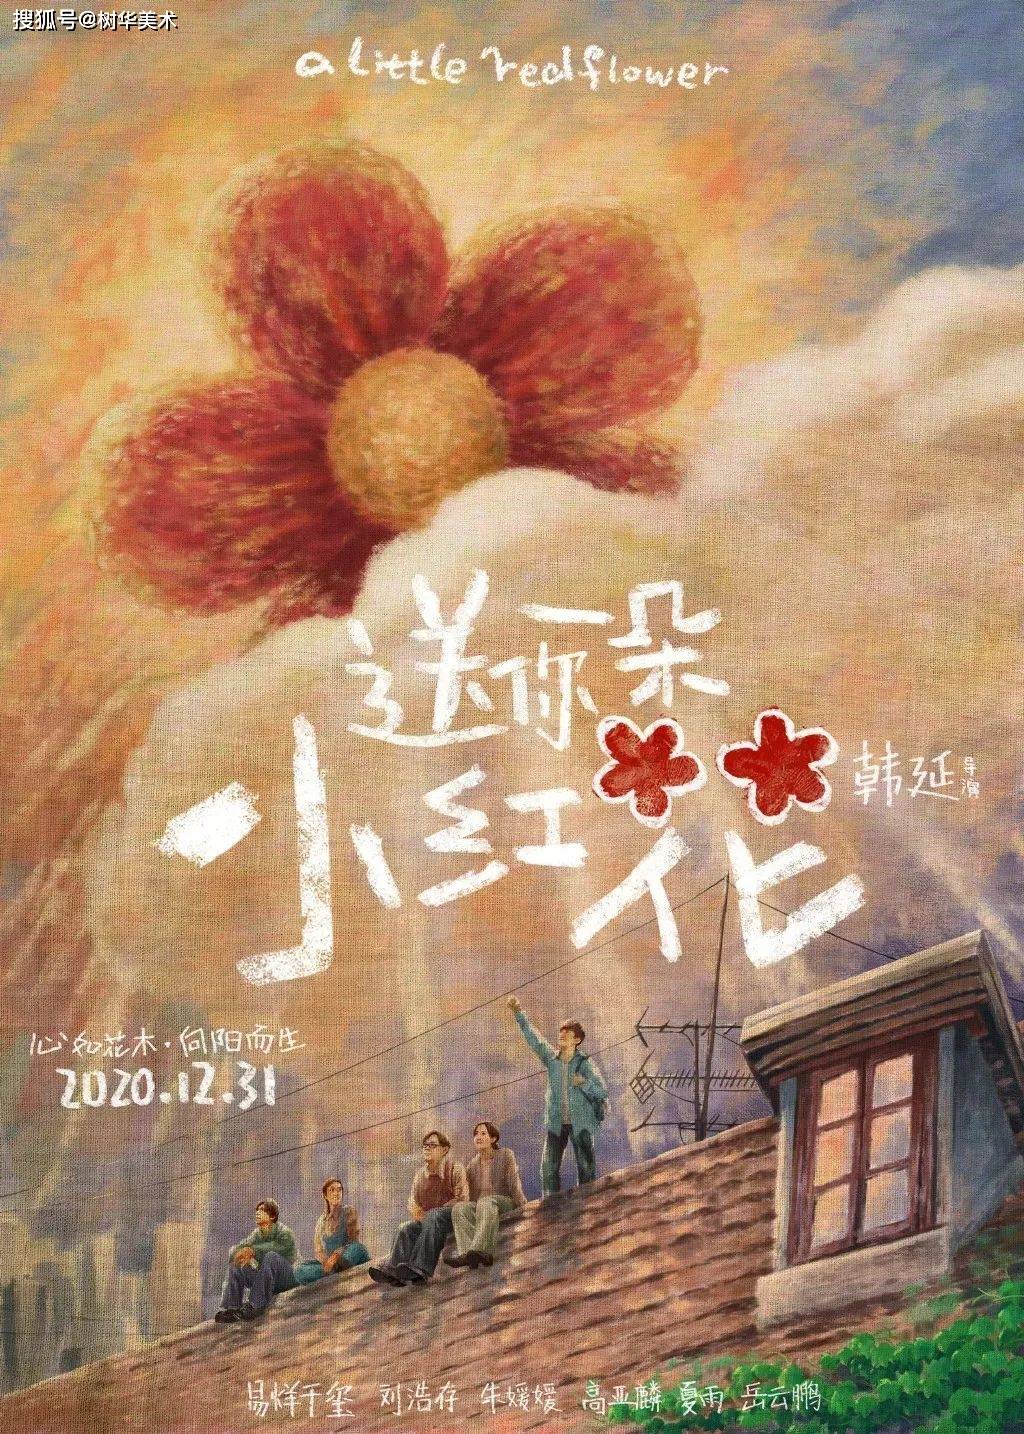 夏雨等出演, 将于12月31日上映的电影 图片来源:送你一朵小红花官微